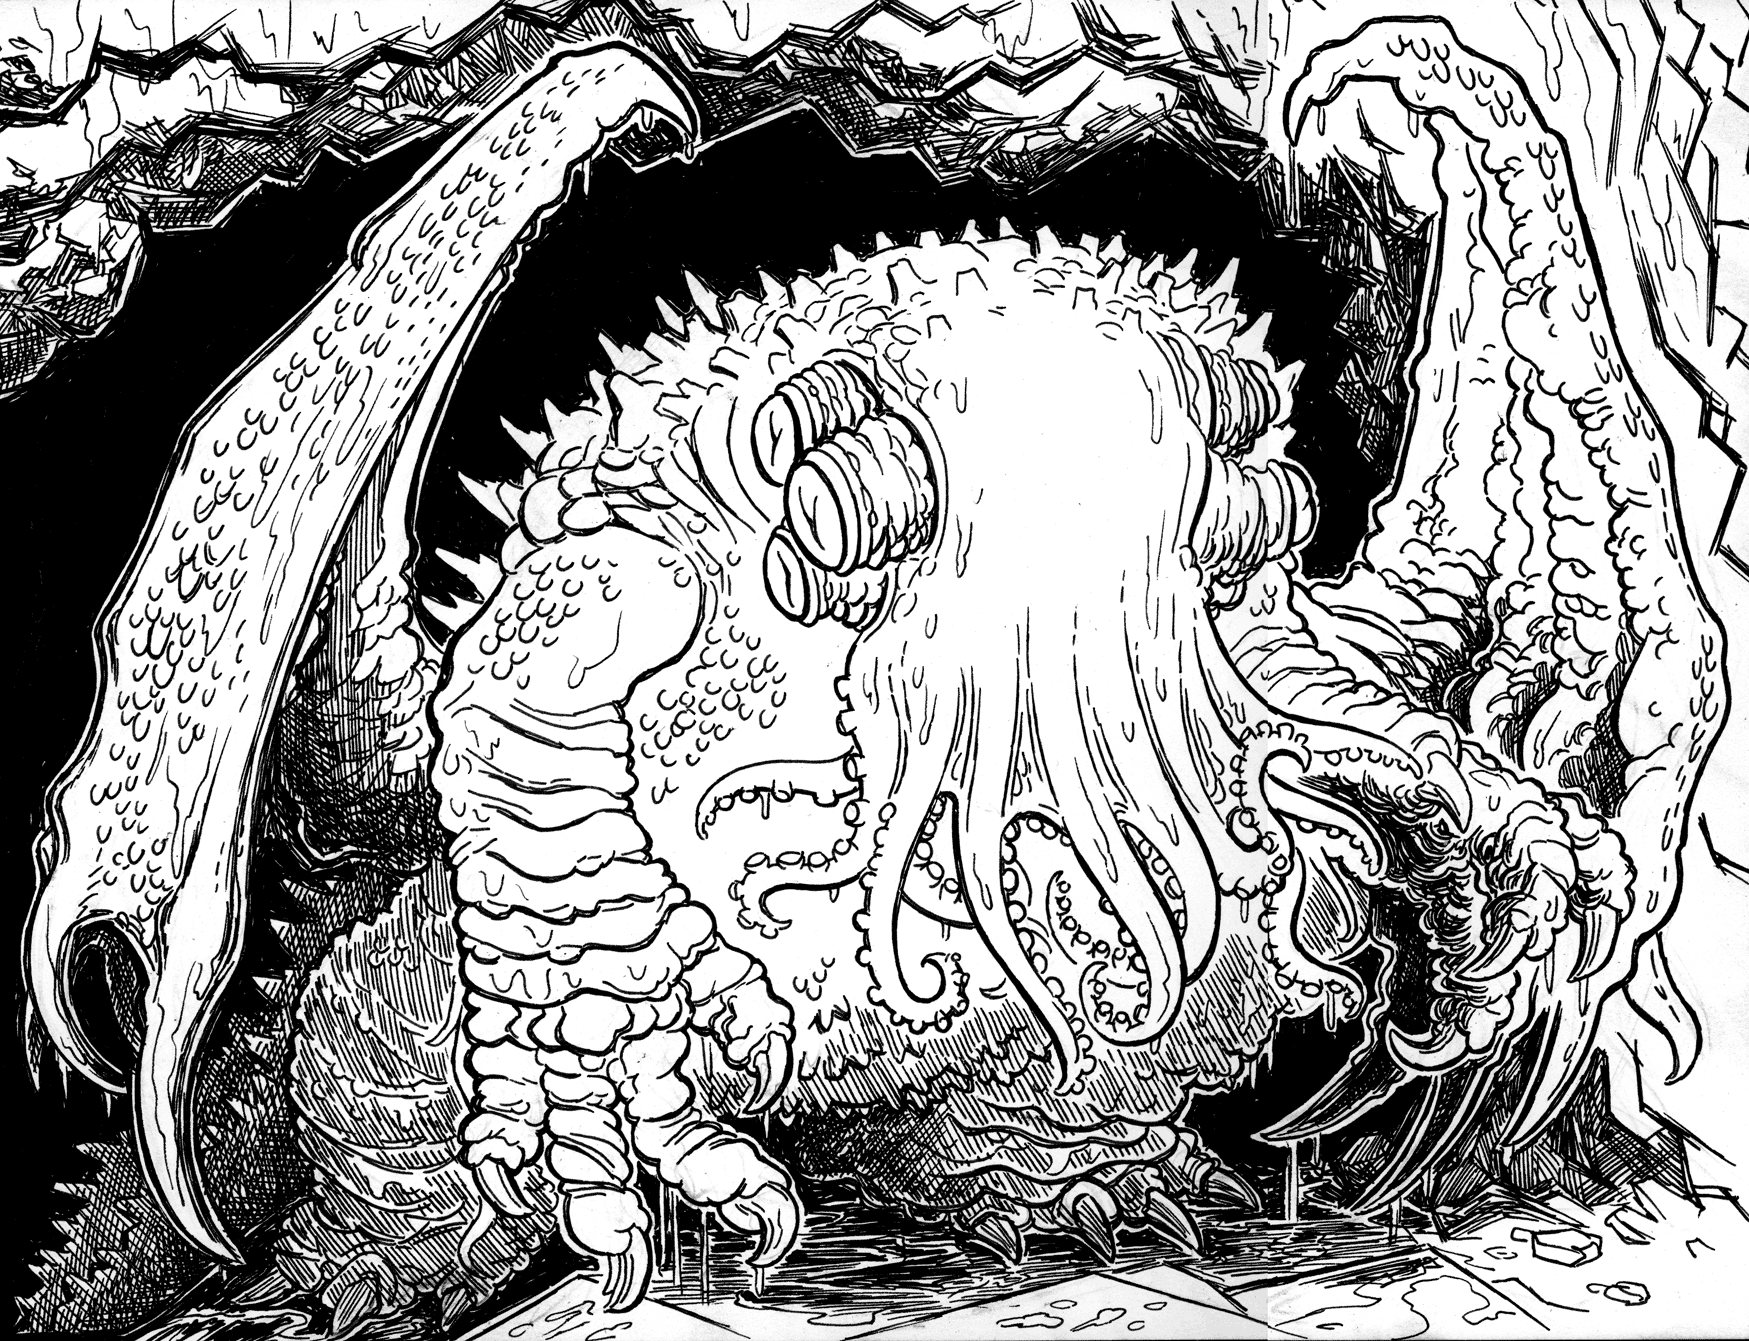 Lovecraft Sketch MWF: Cthulhu